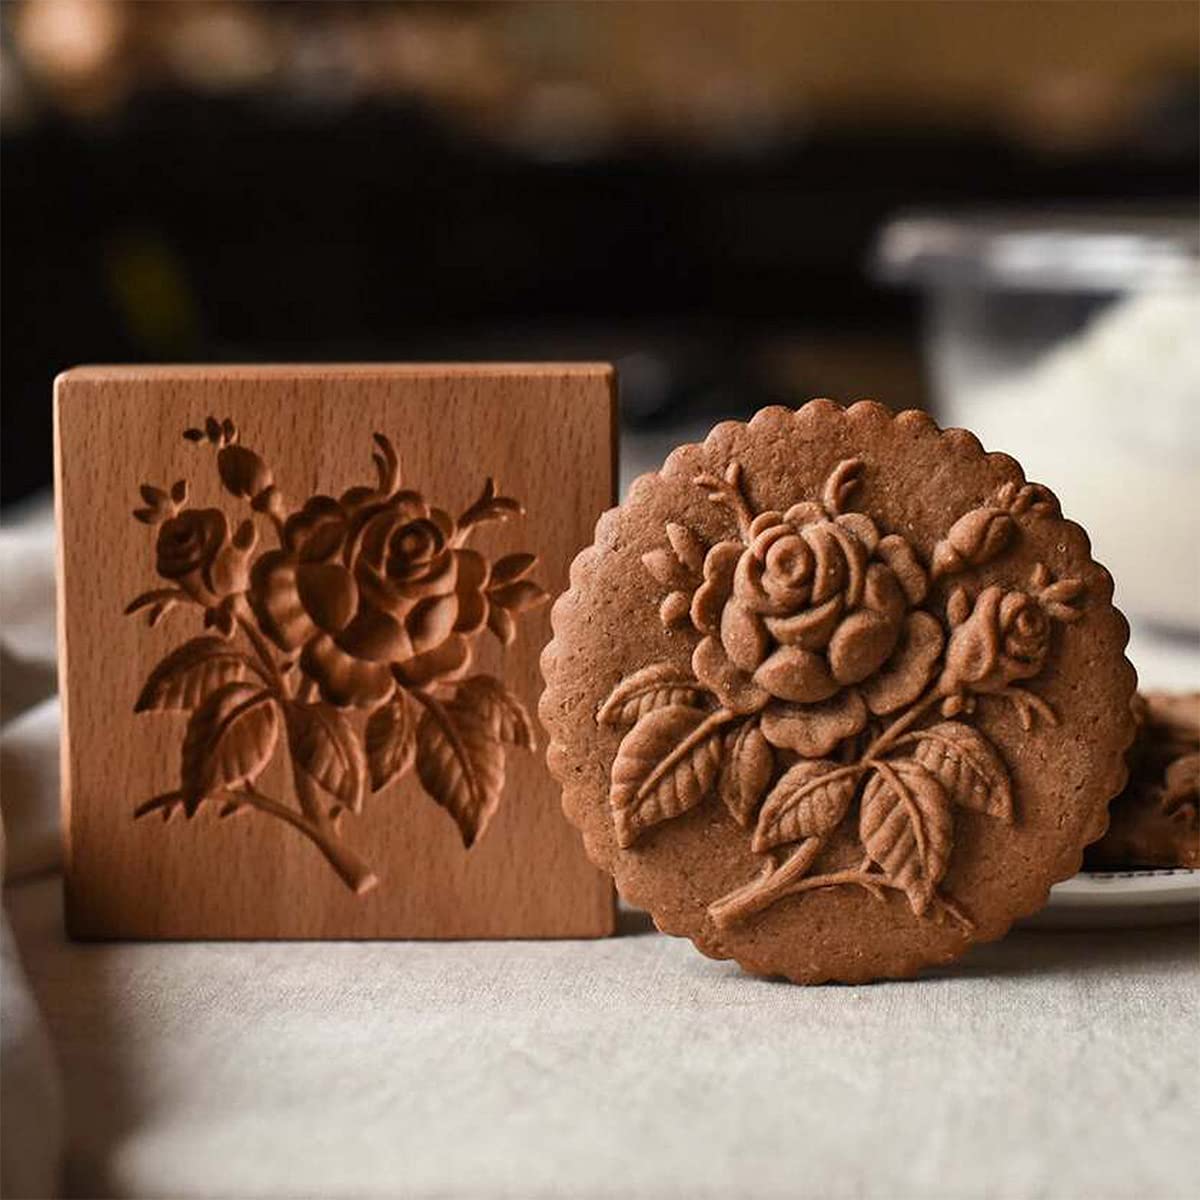 QIEUUOD Wooden Mold Cookie Stamp